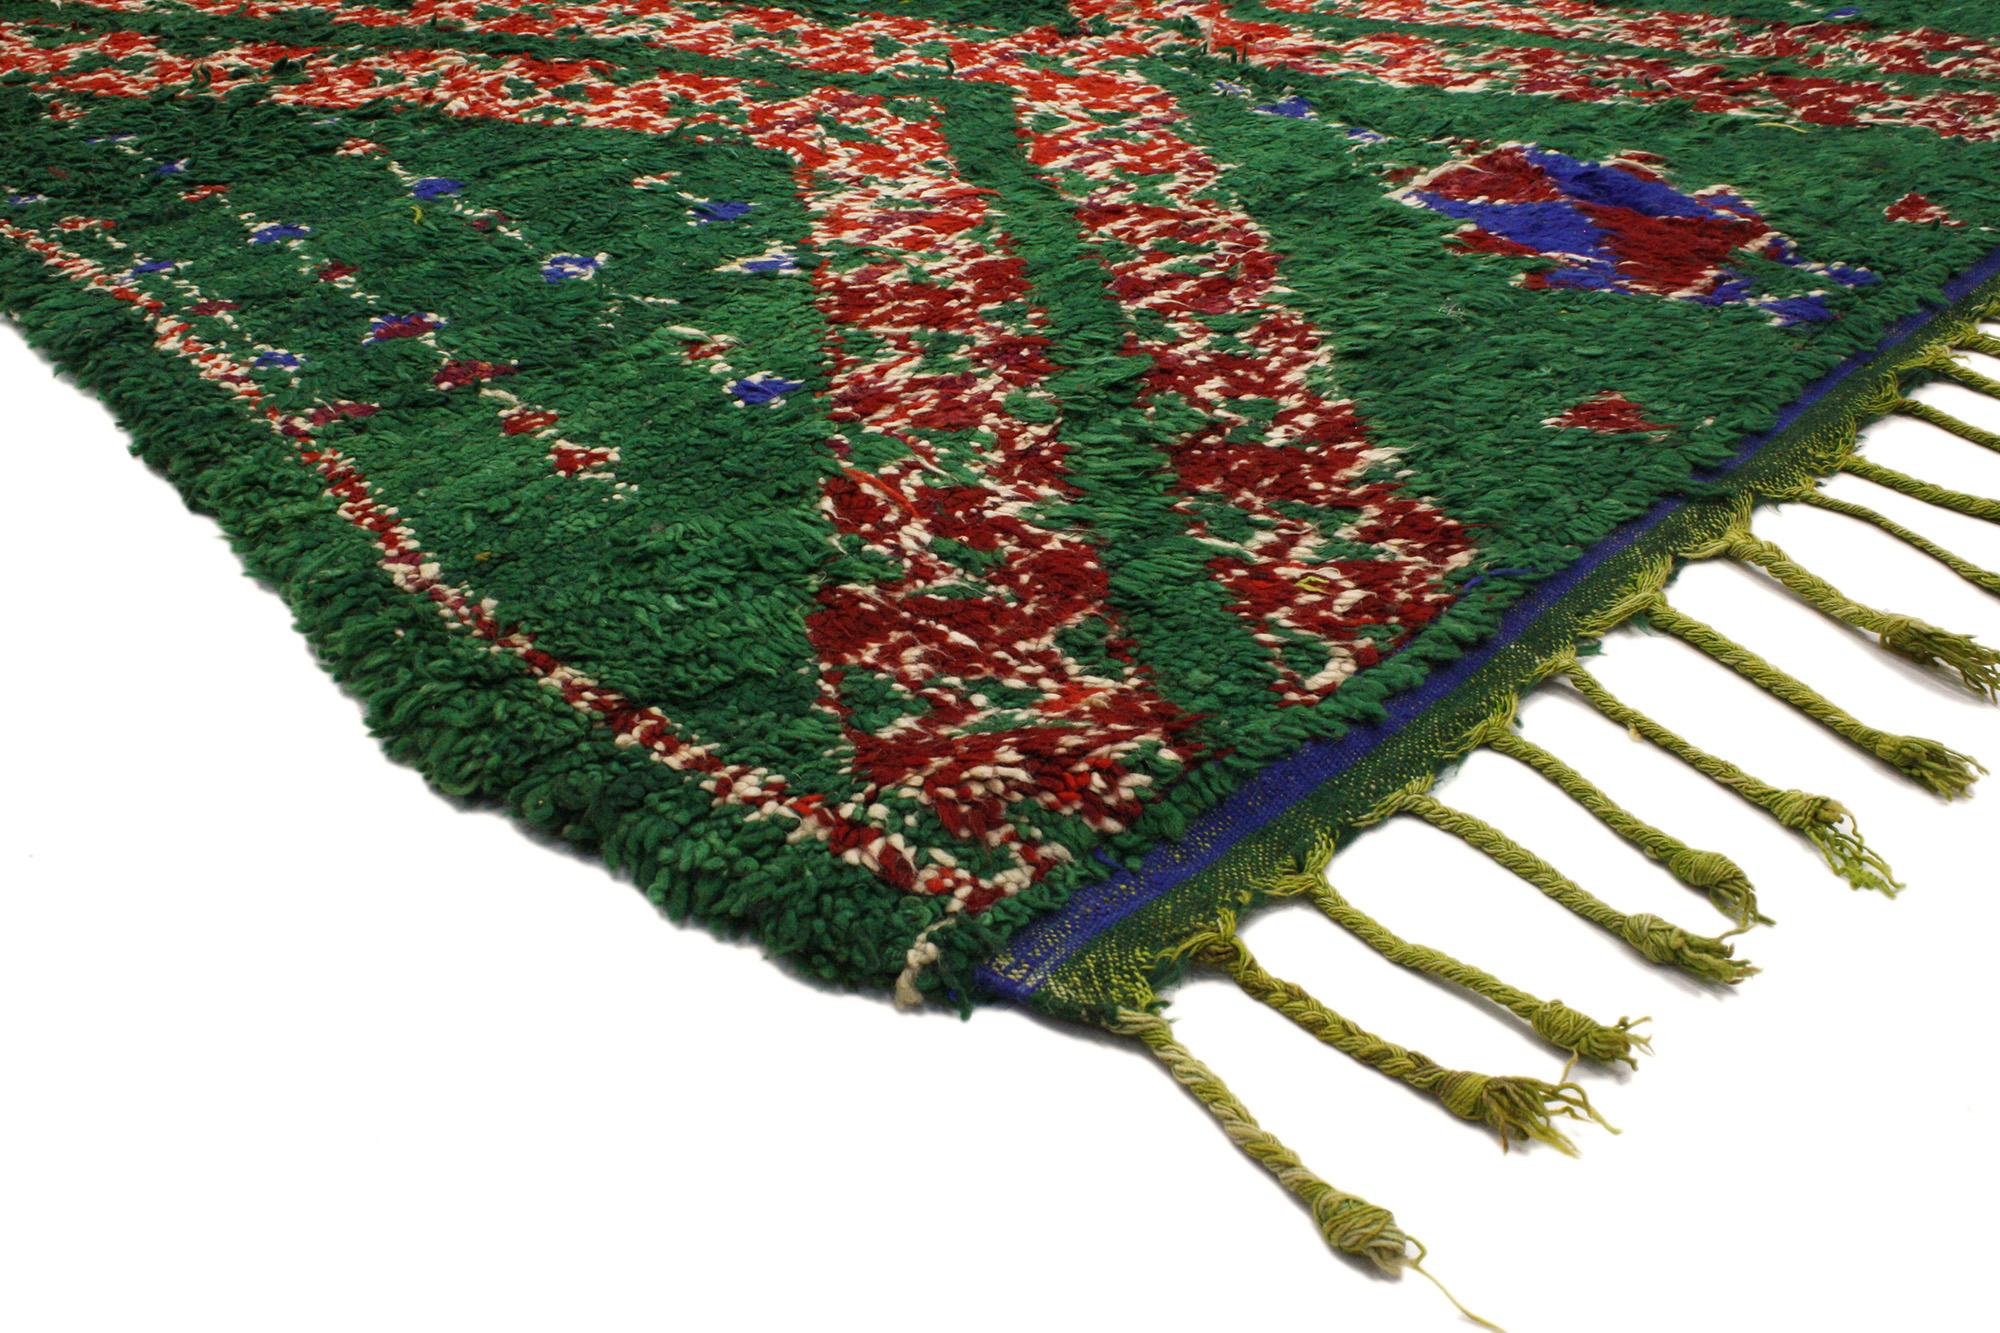 20322 Vintage Grün Beni MGuild Marokkanischer Teppich, 06'01 x 10'09. 
Boho Chic trifft auf biophiles Design in diesem handgeknüpften grünen Beni MGuild Marokko-Teppich aus Wolle. Die Symbolik der Berberstämme und die kräftigen Farben, die in dieses